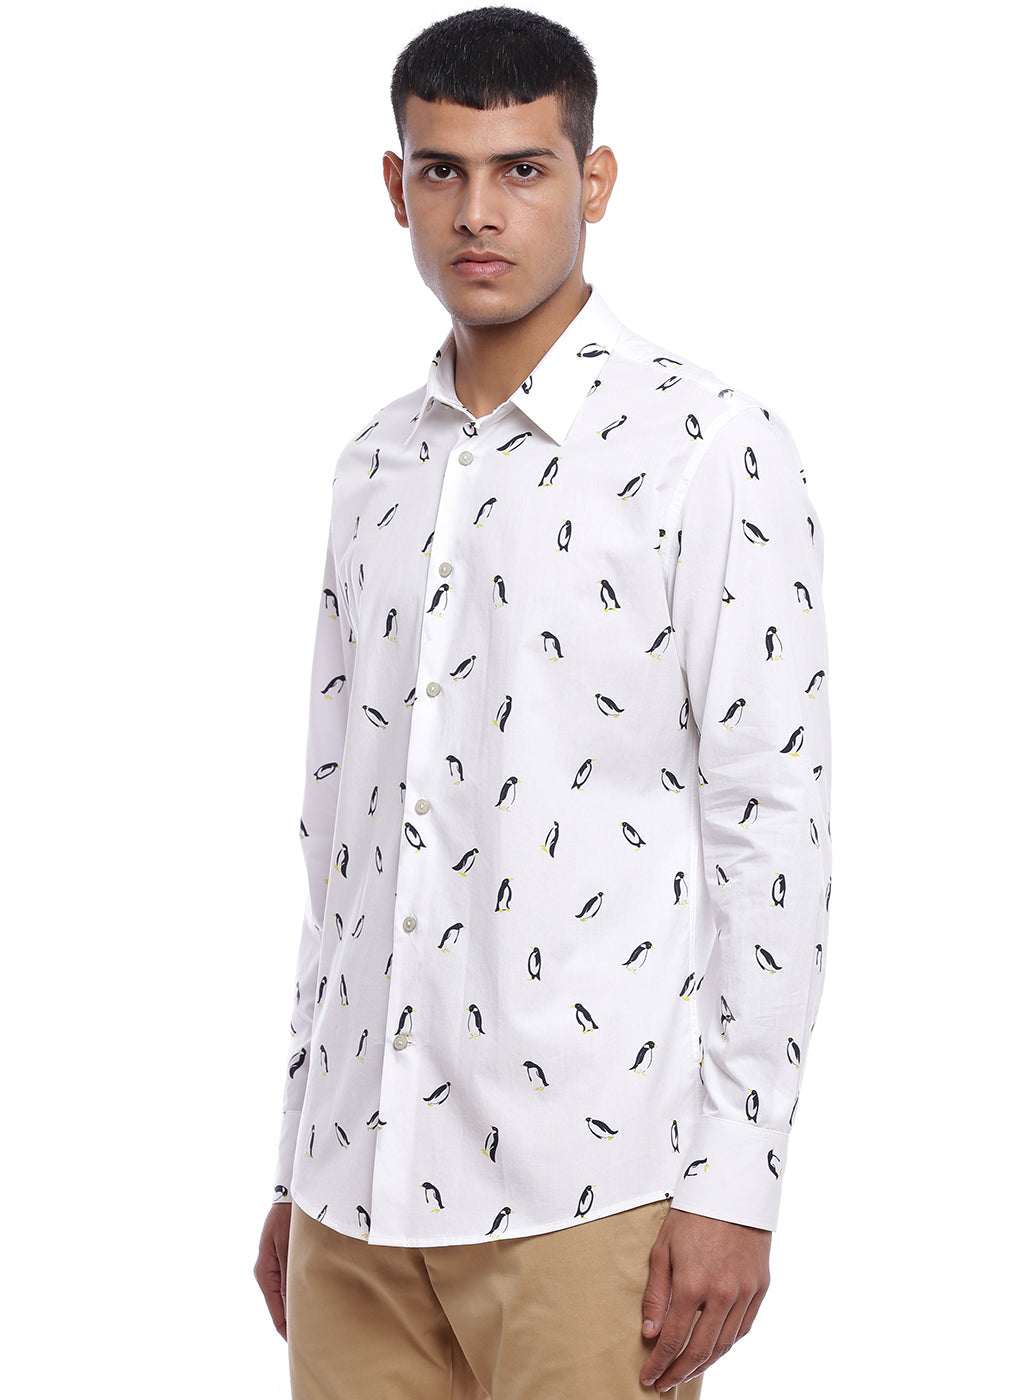 Penguin Print Full Sleeved Shirt - Genes online store 2020